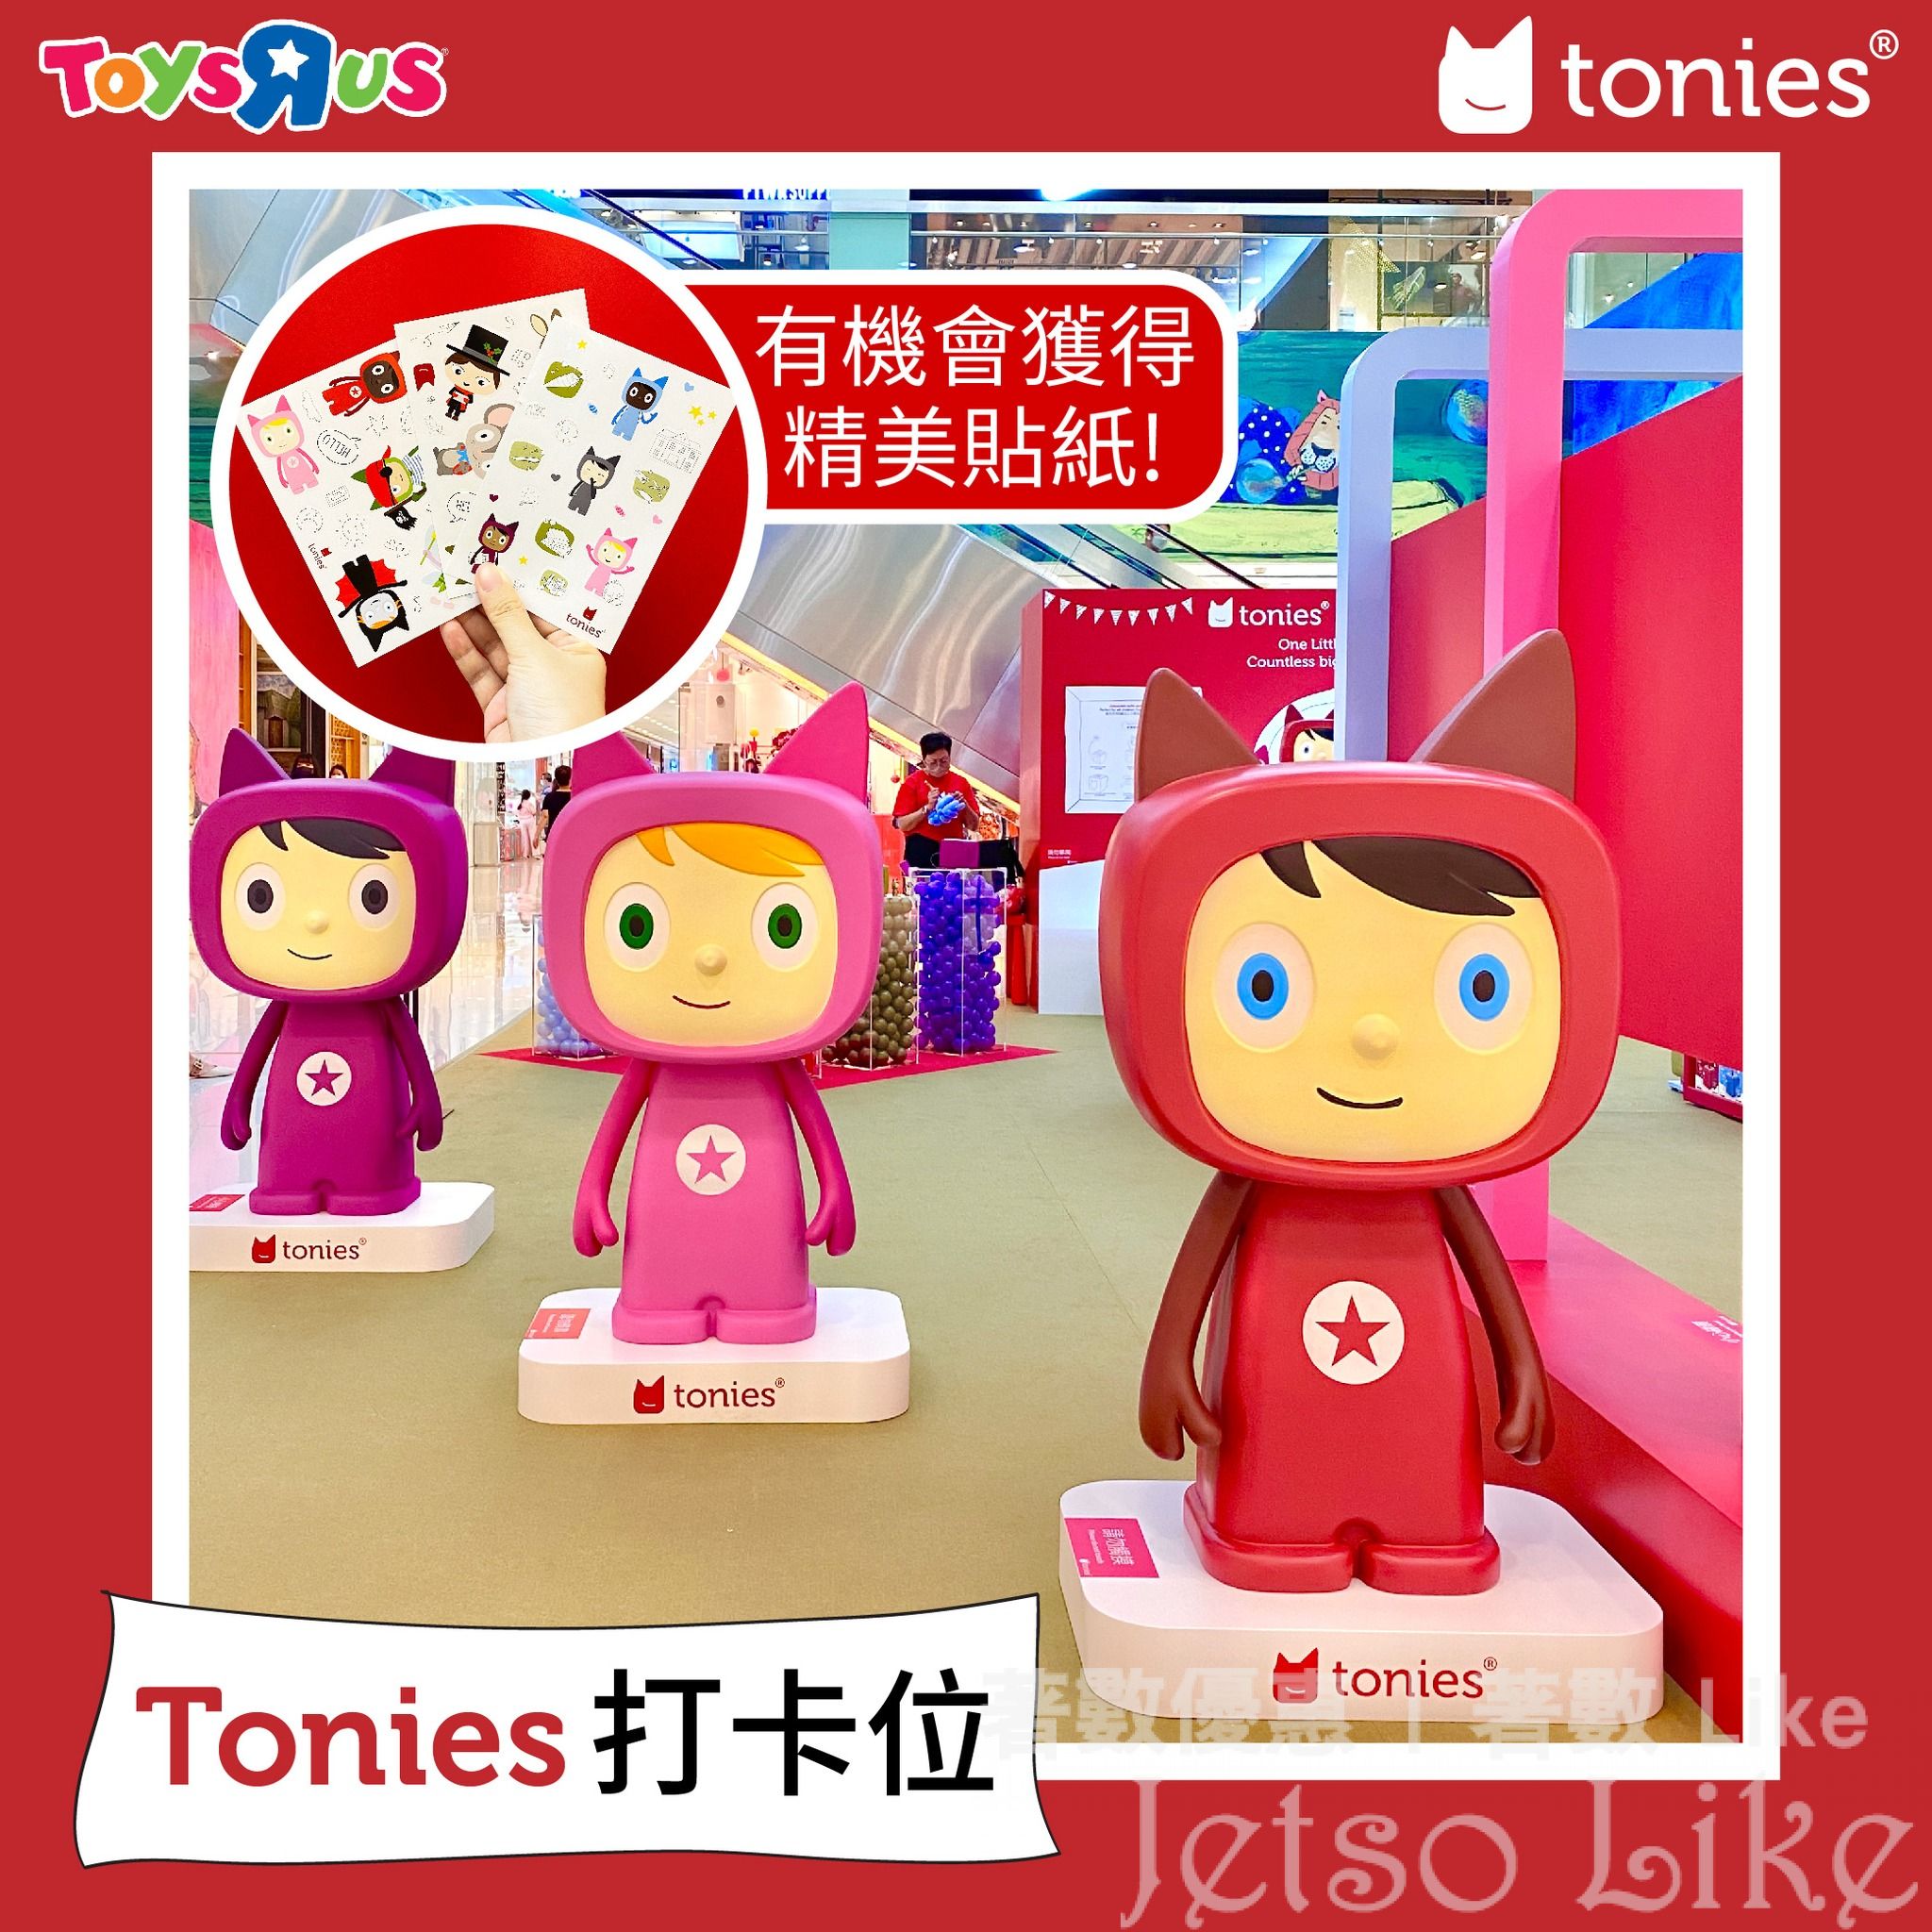 Toys”R”Us Tonies小盒子探索之旅 送 精美小禮物